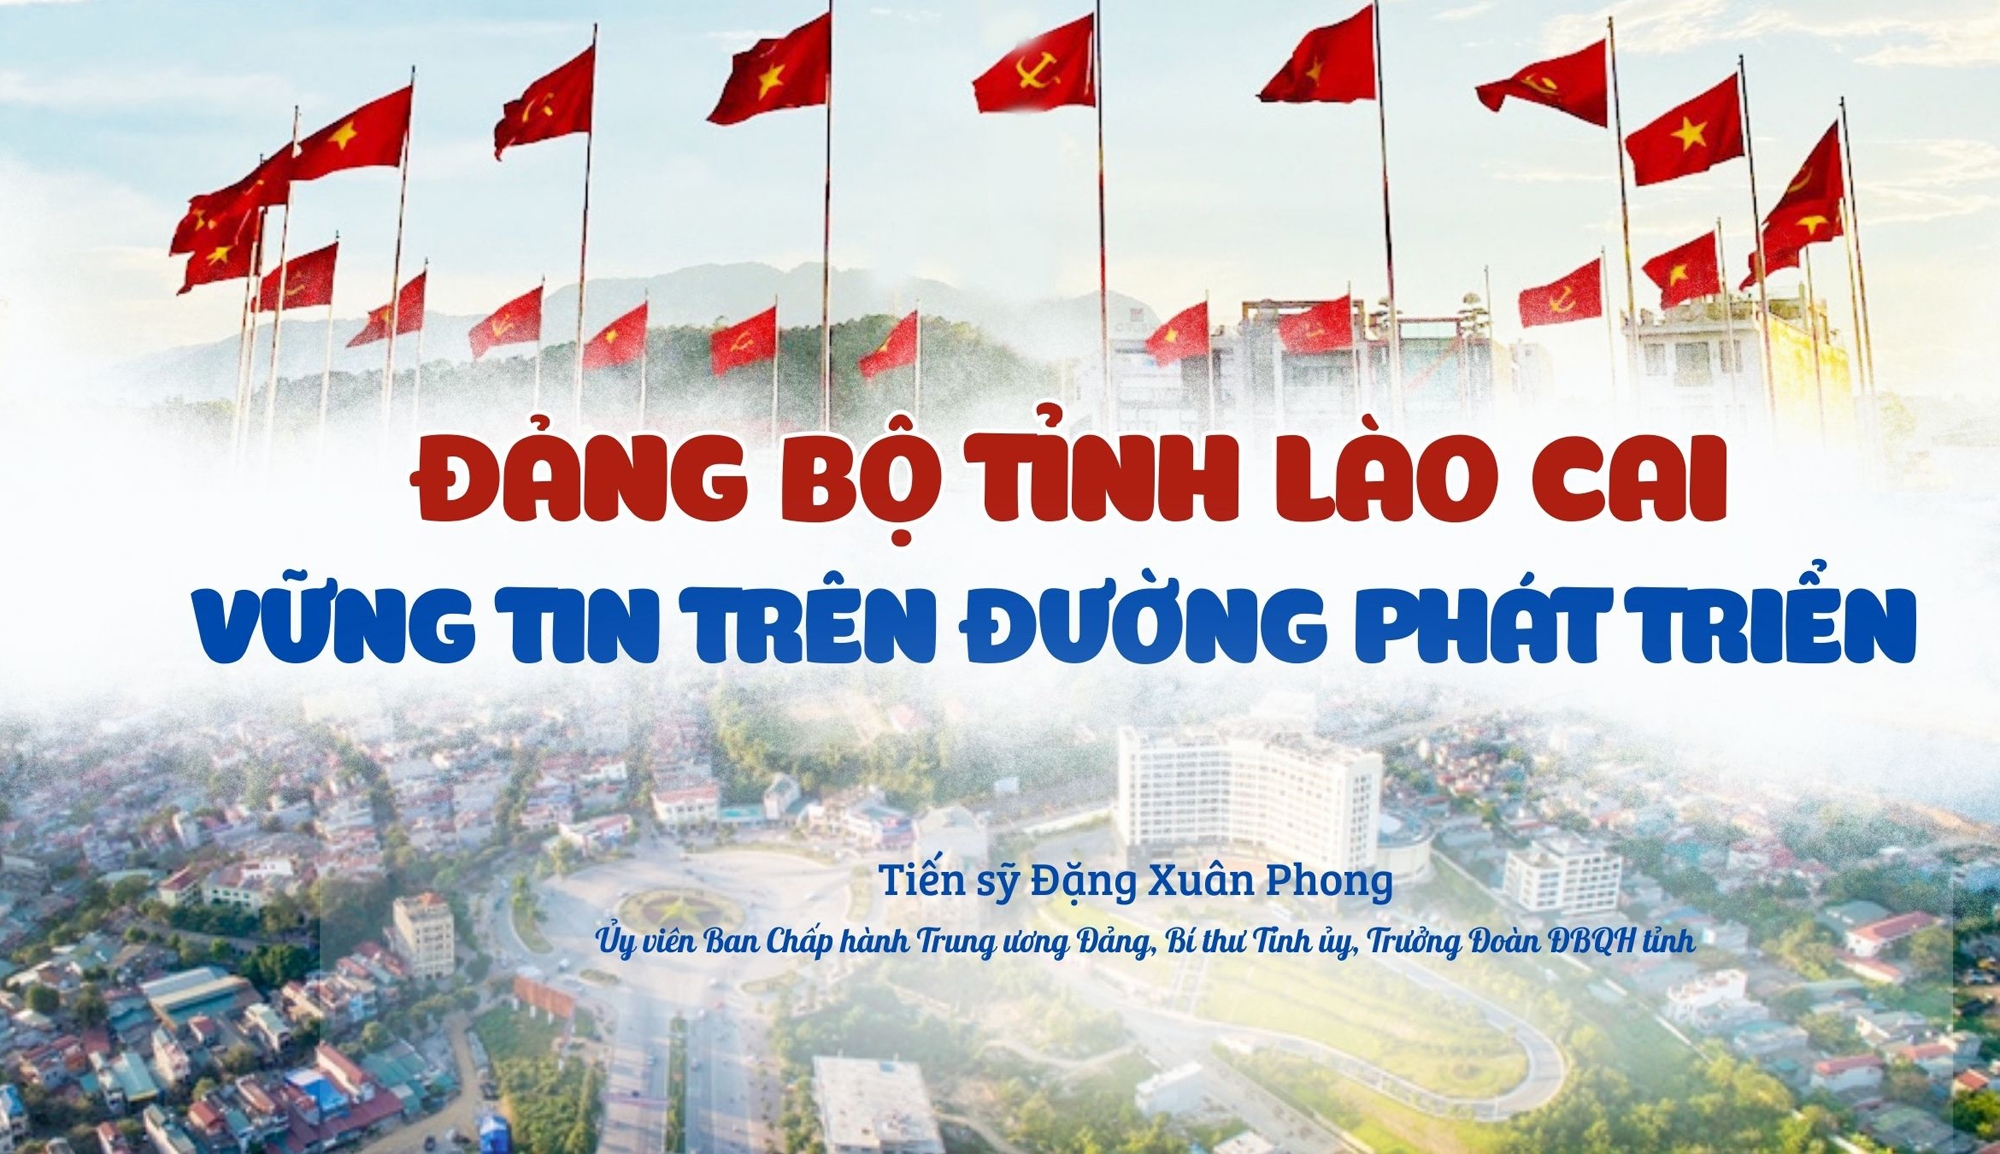 Đảng bộ tỉnh Lào Cai - vững tin trên đường phát triển